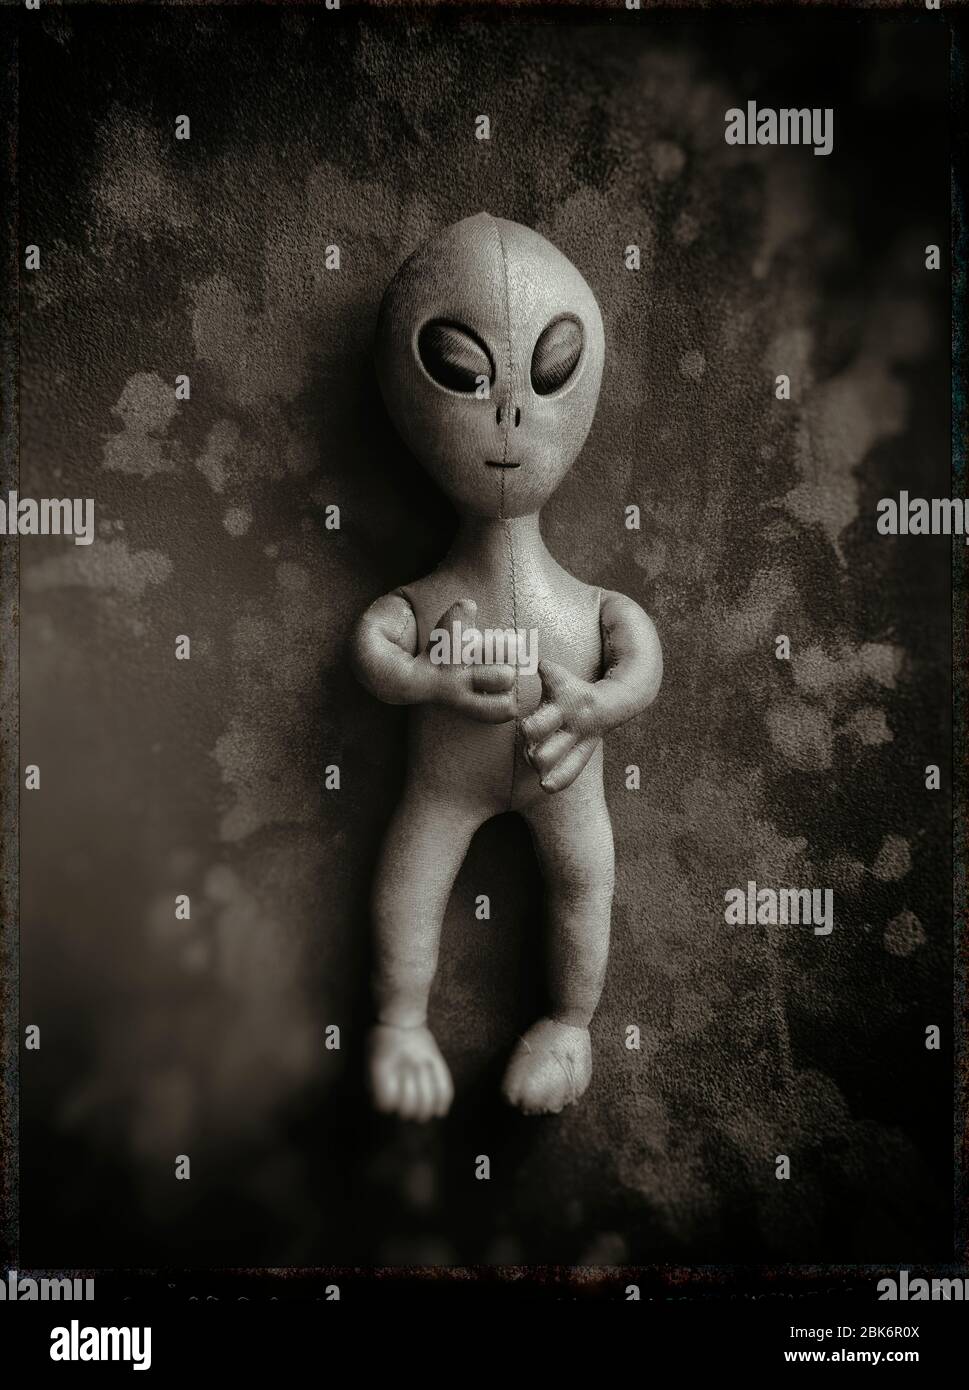 Bambola aliena giocattolo su sfondo dipinto Foto Stock